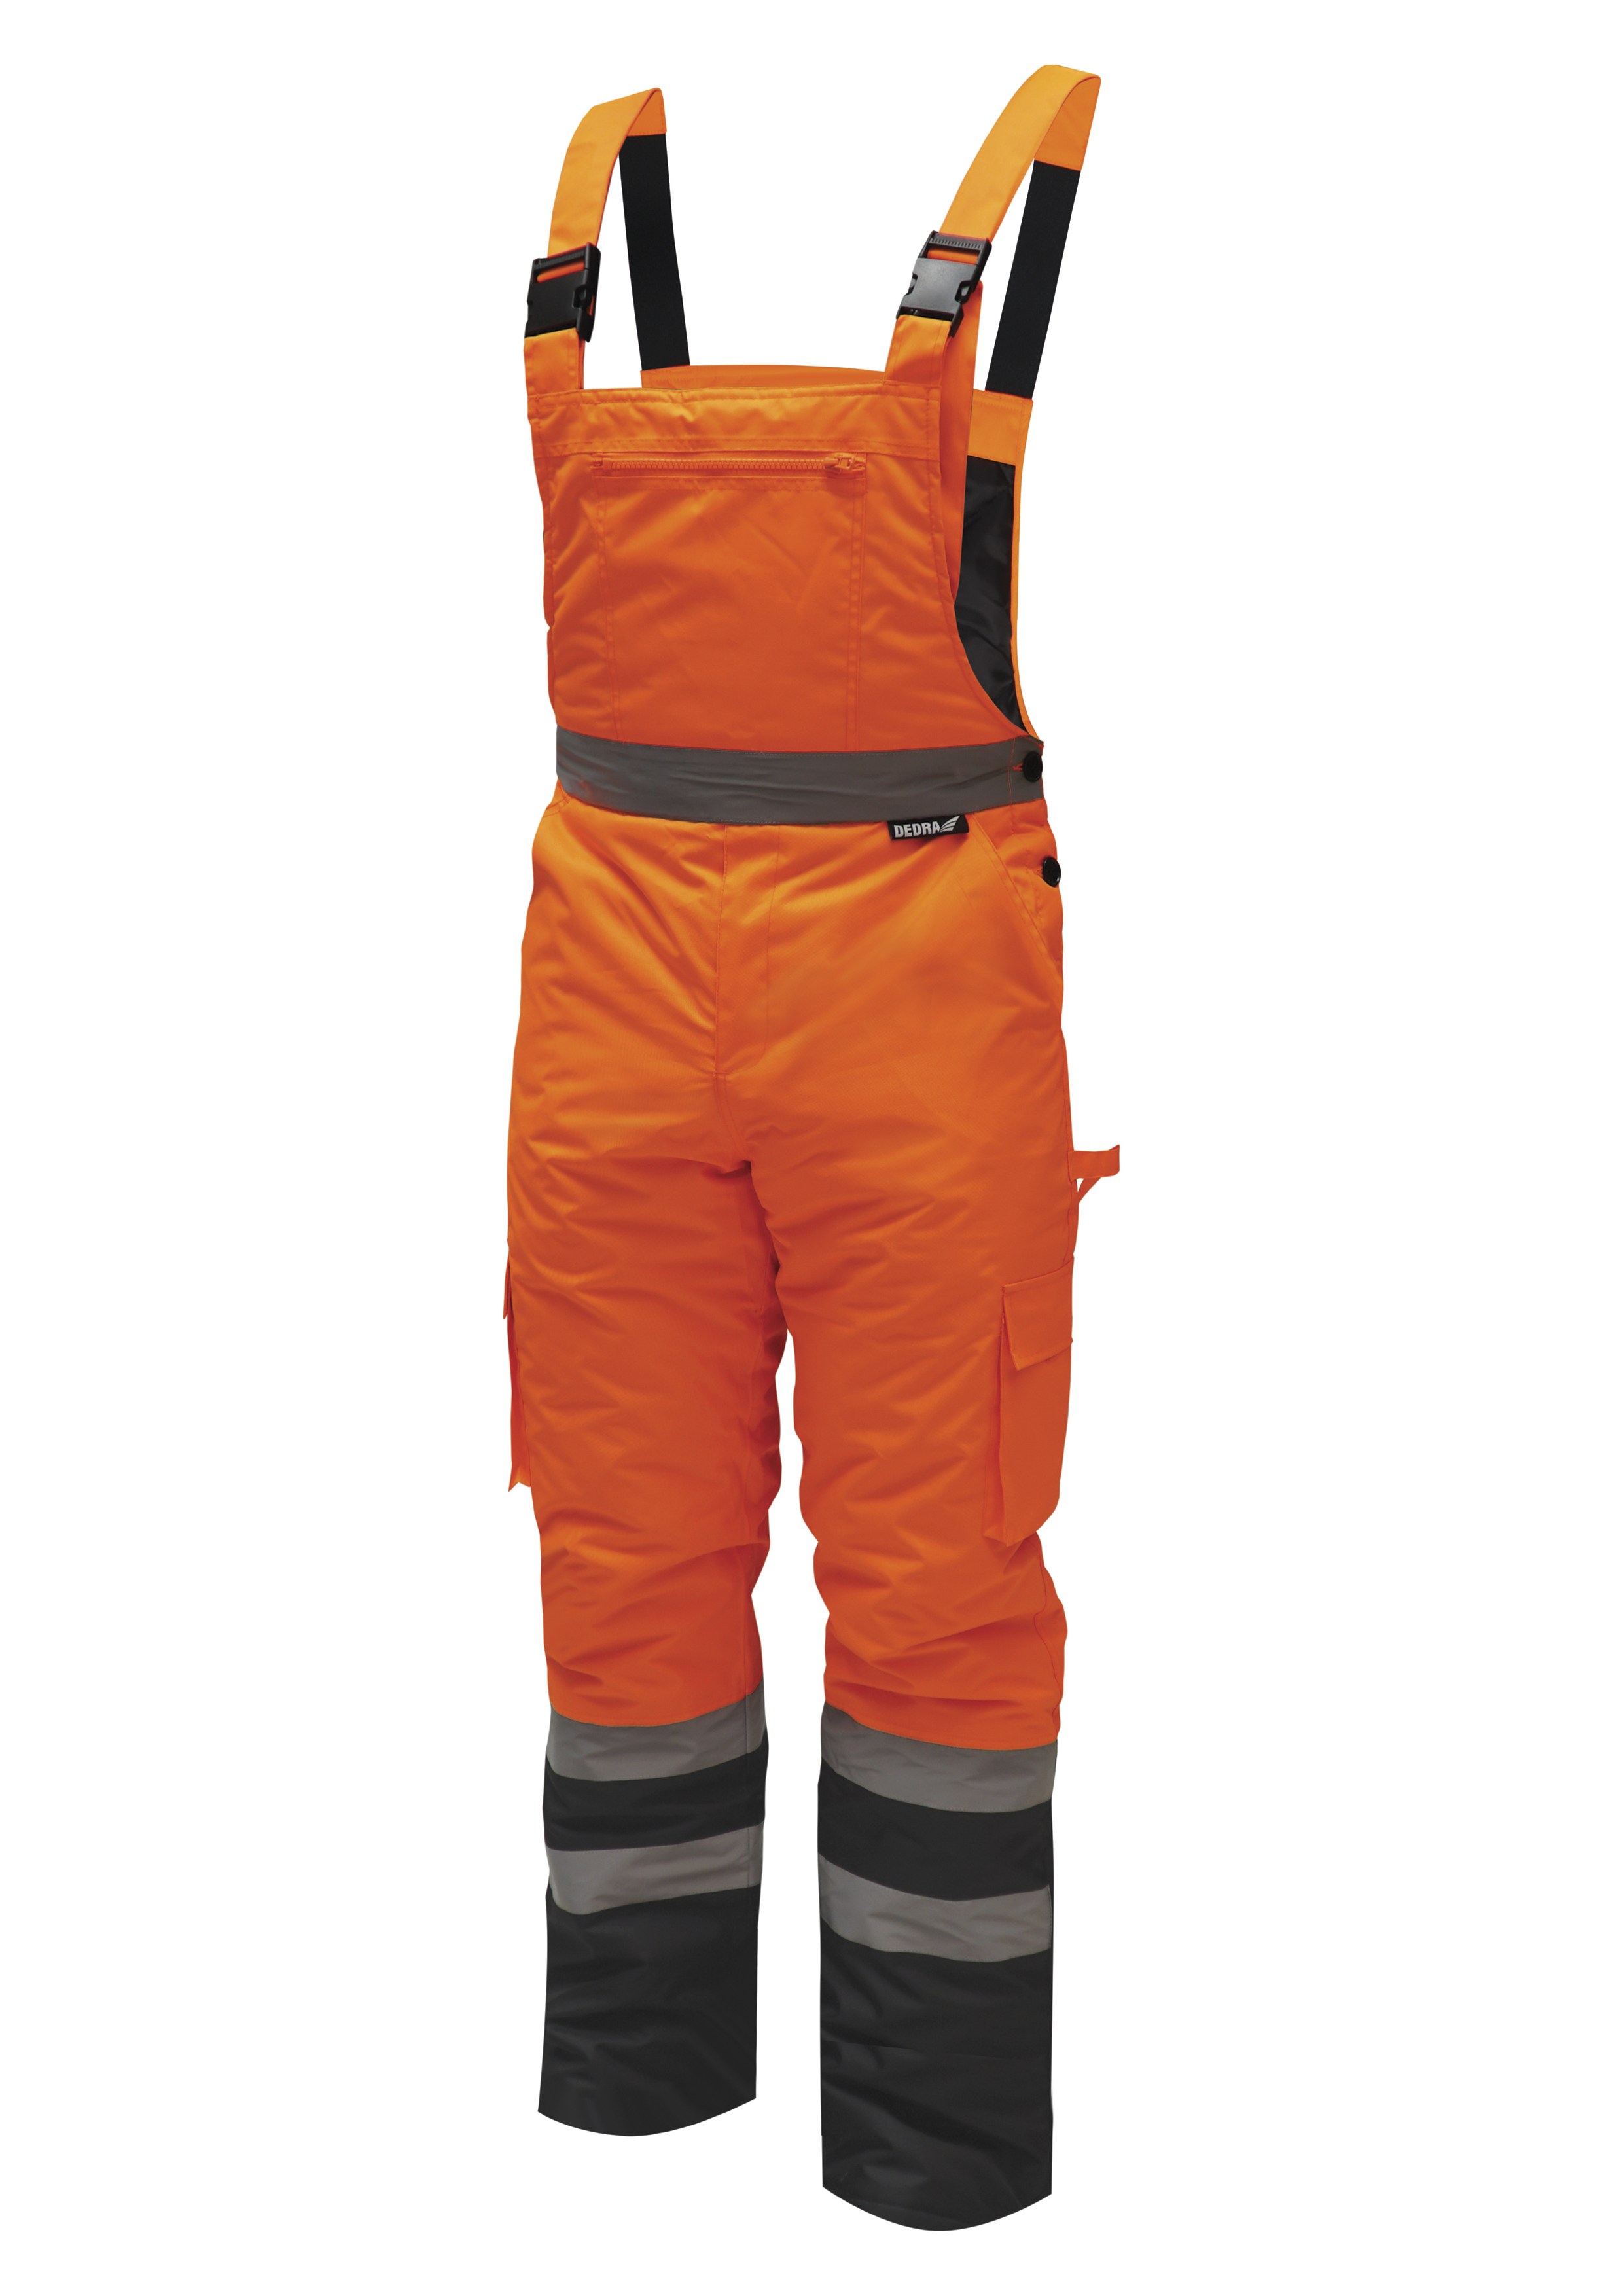 Reflexní zateplené kalhoty s laclem vel. S,oranžové DEDRA BH80SO2-S + Dárek, servis bez starostí v hodnotě 300Kč